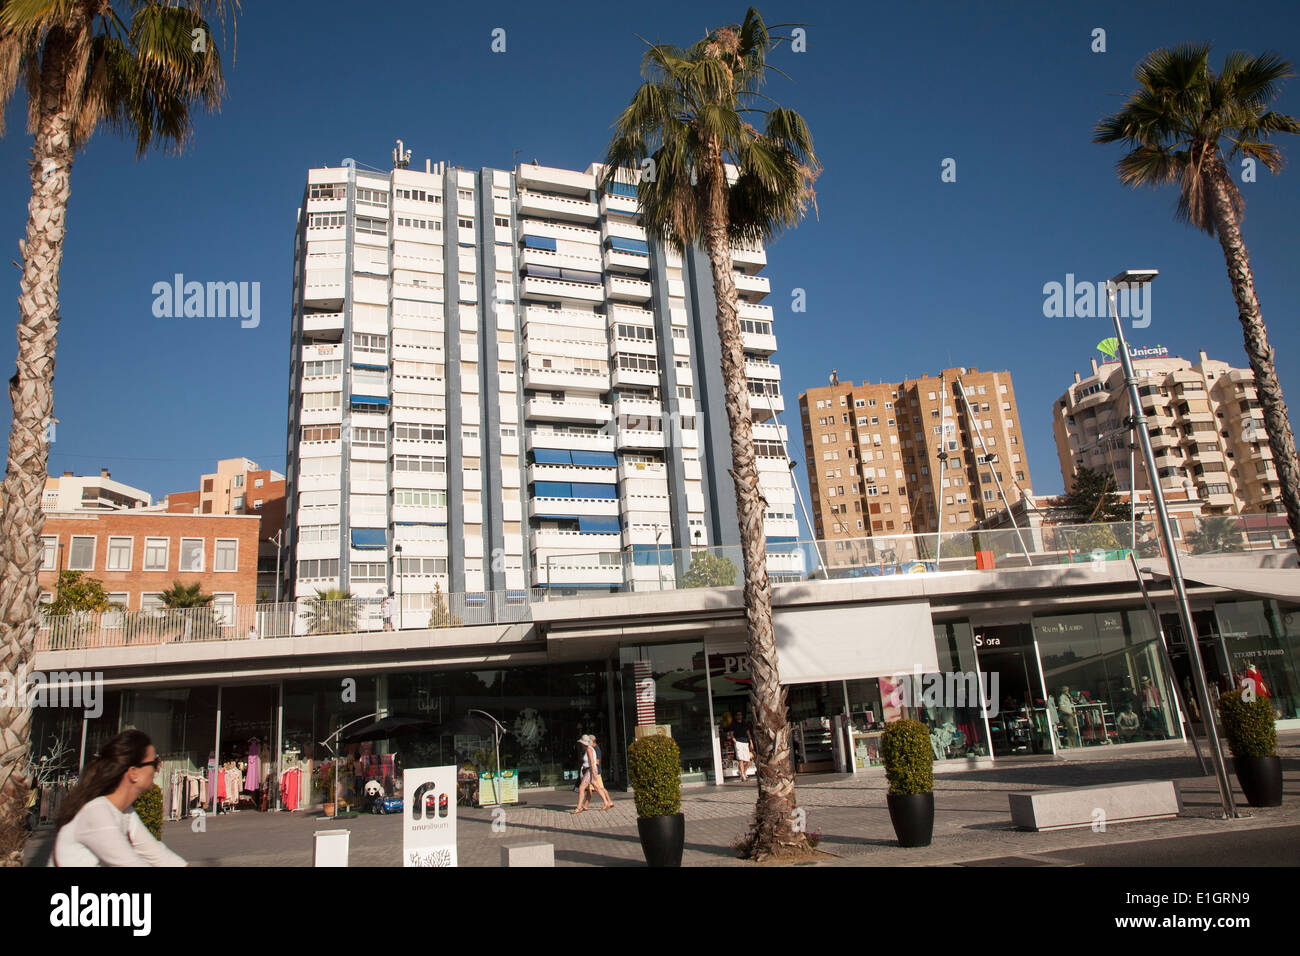 Les gens qui marchent dans la zone port nouvellement réaménagé de boutiques et bars Malaga, Espagne Muelle dos - Palmeral de las Sorpresas Banque D'Images